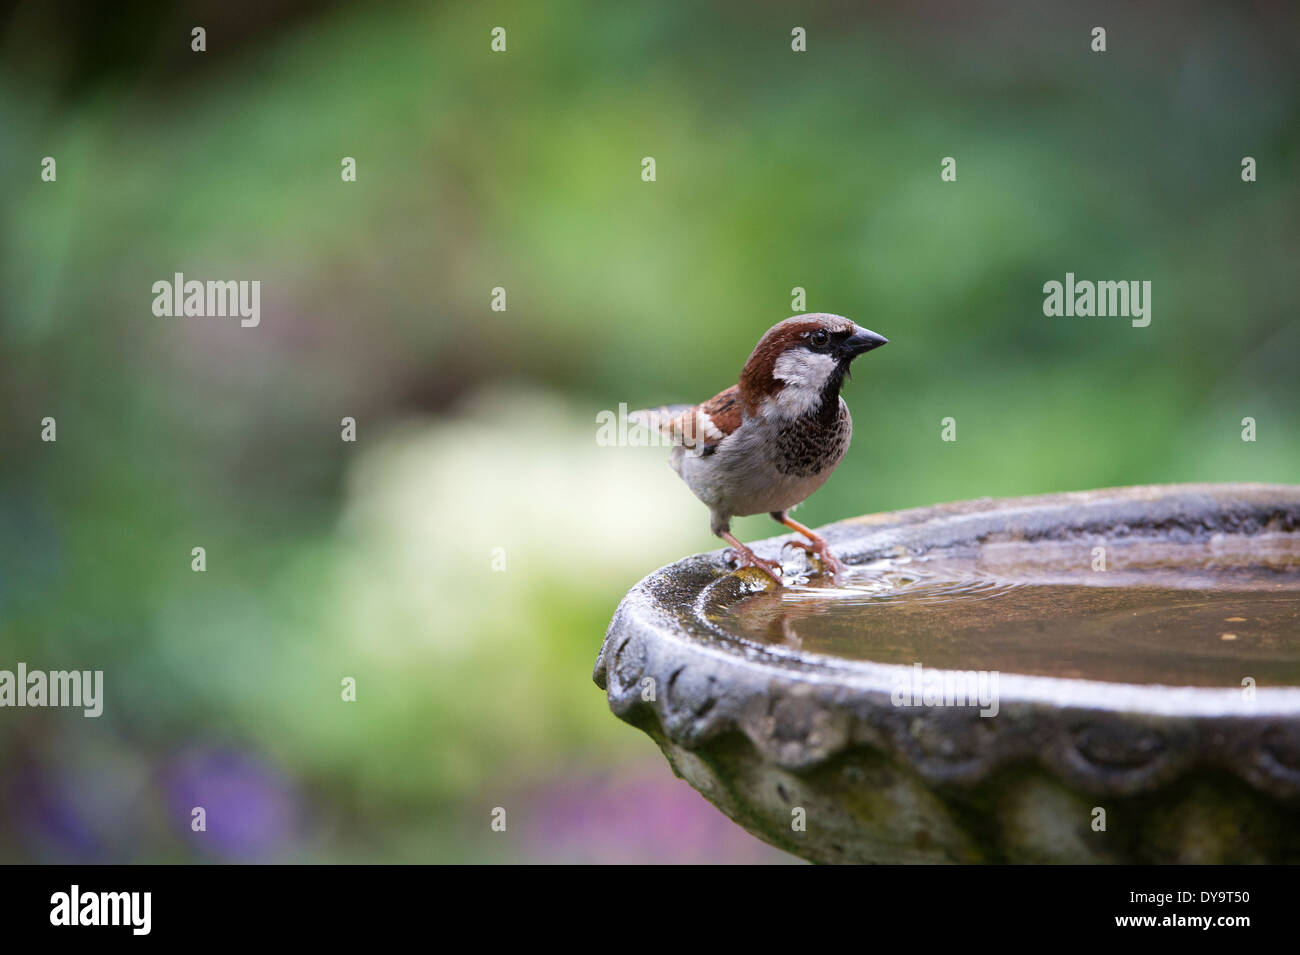 Male House sparrow on a birdbath Stock Photo